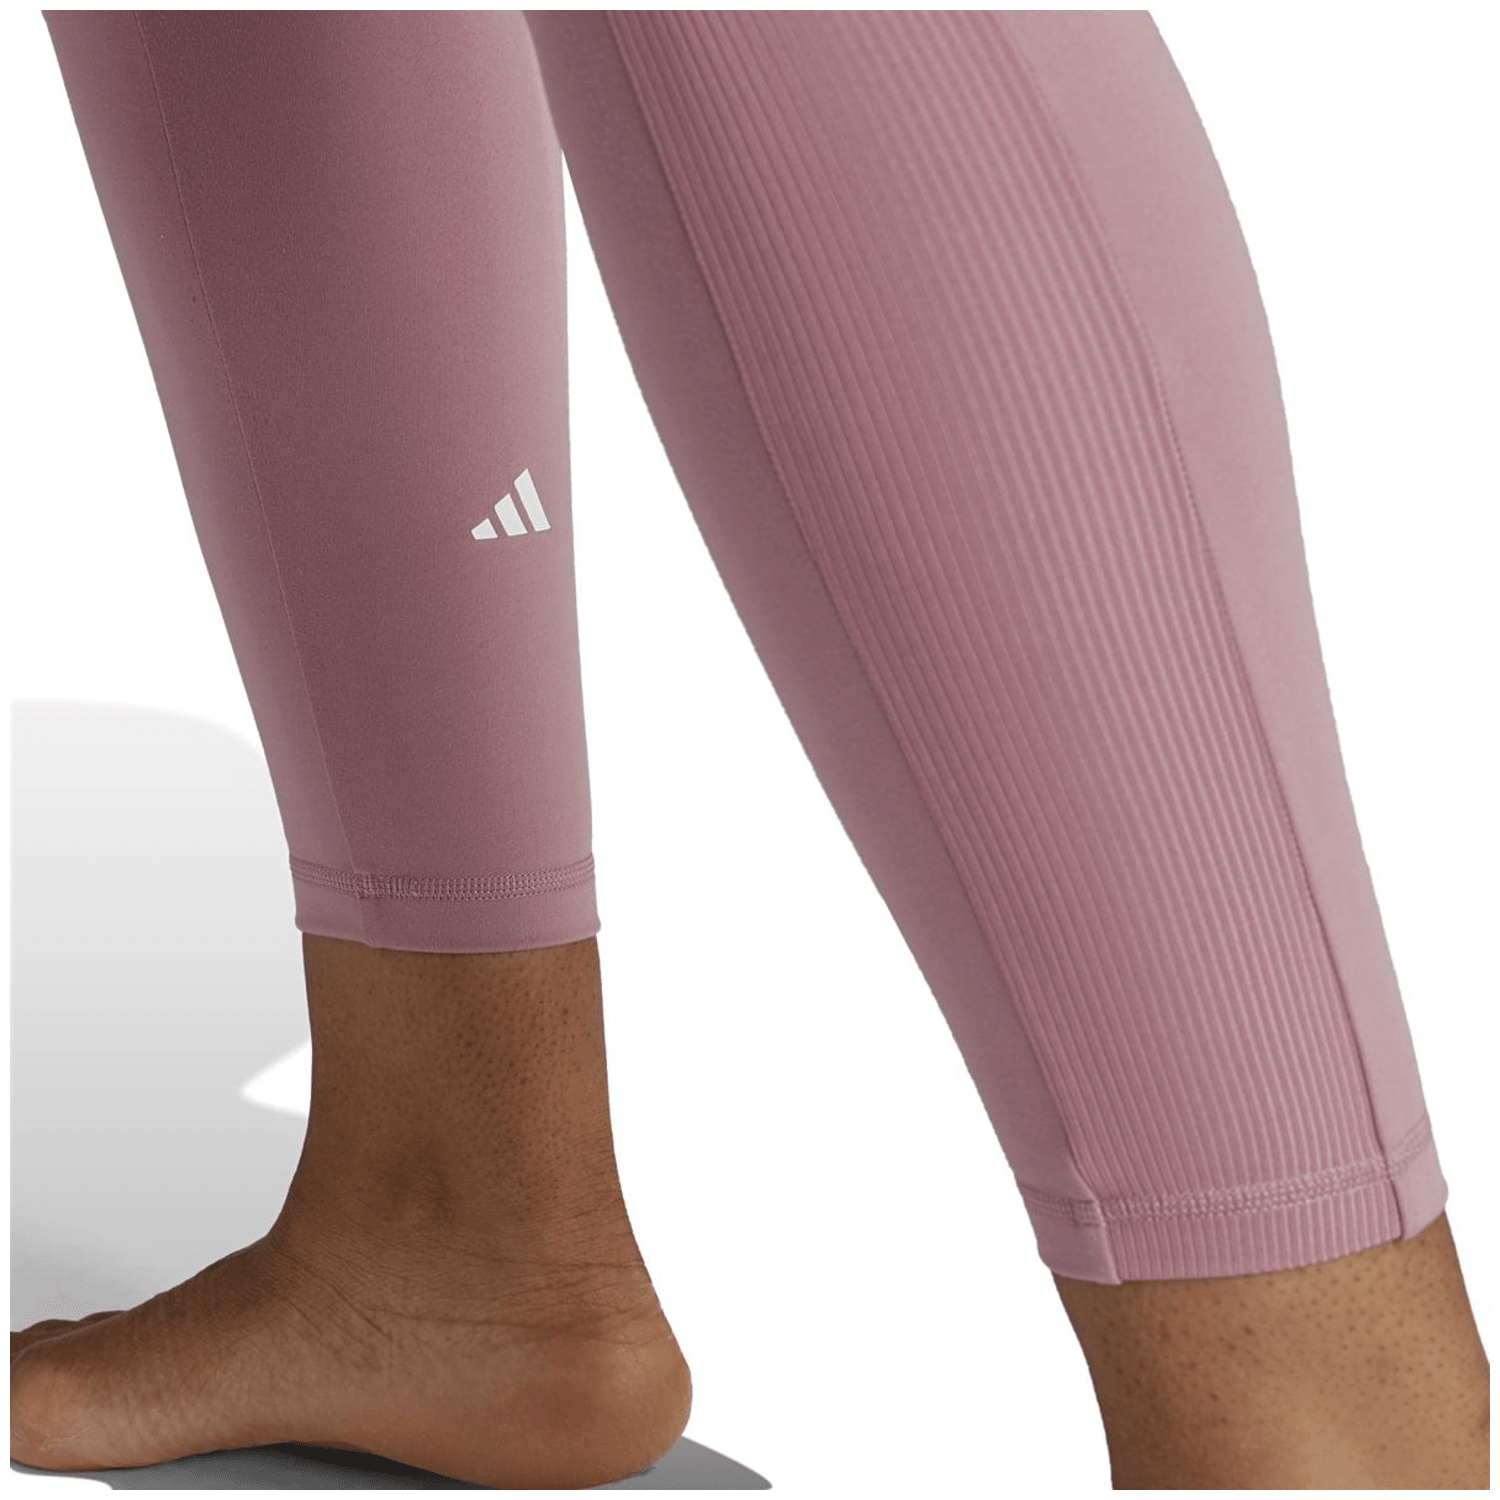 Adidas Yoga Essentials 7/8-Leggings Damen